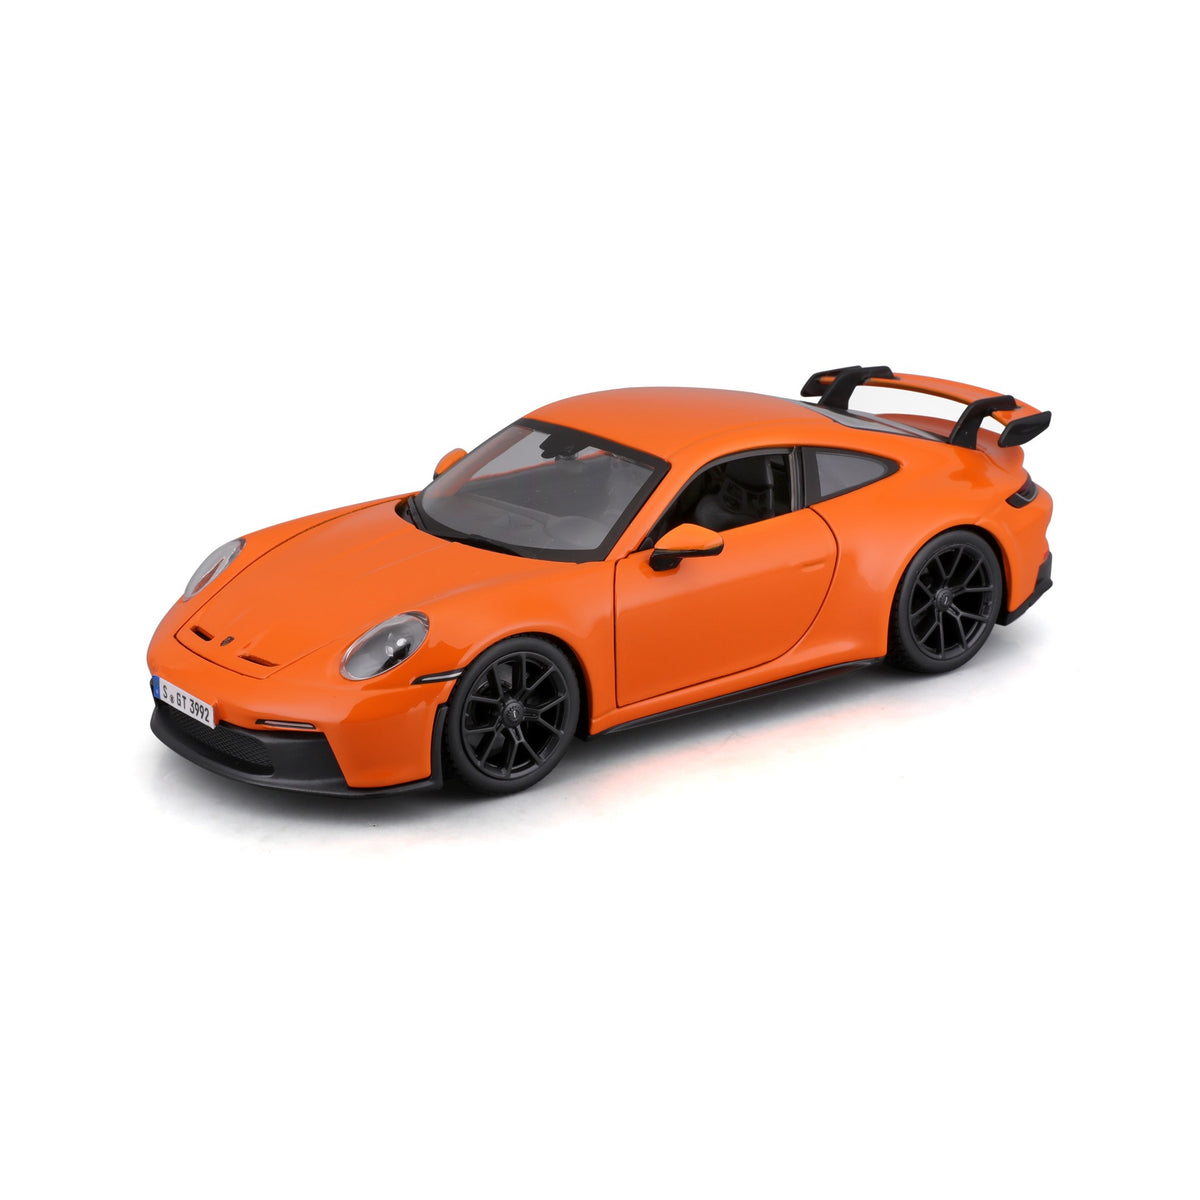 18-21104  Bburago - Porsche 911 GT3 Orange - 1:24